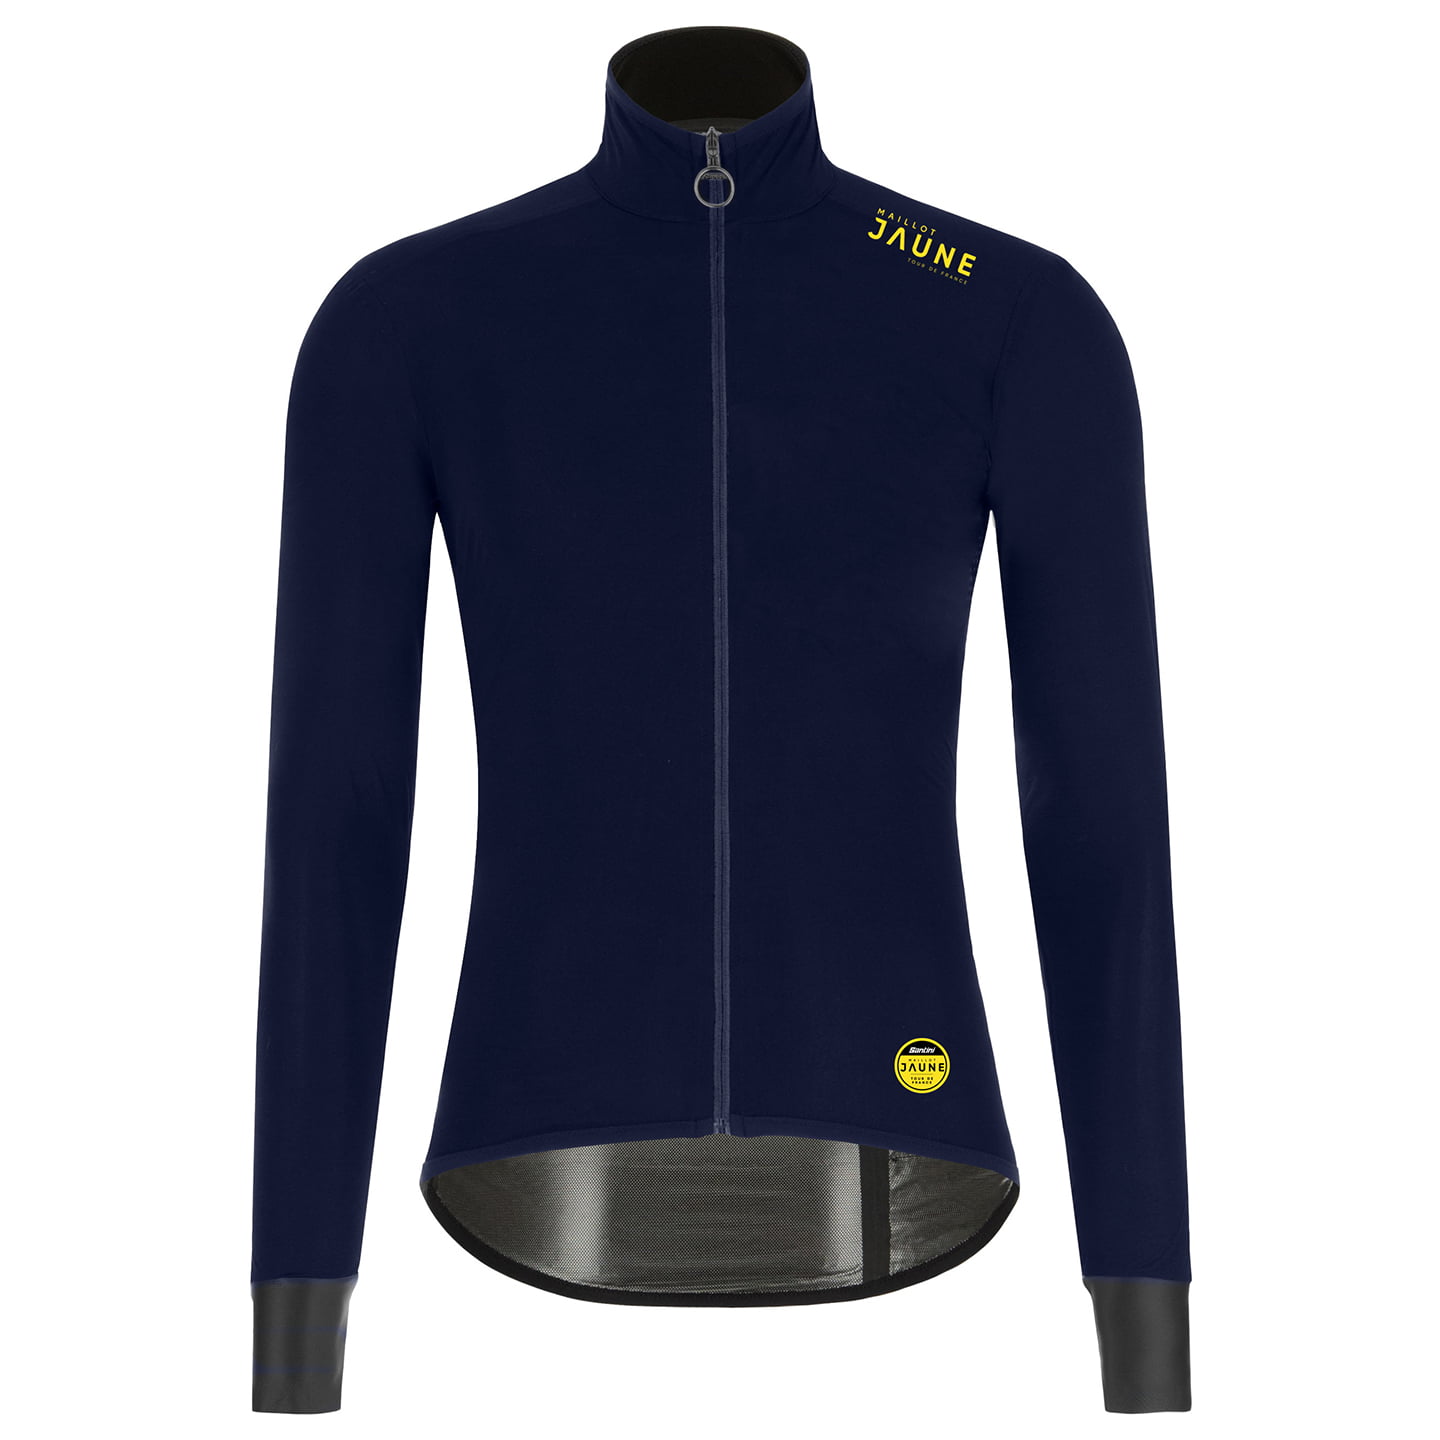 TOUR DE FRANCE Le Maillot Jaune 2023 Waterproof Jacket, for men, size XL, Winter jacket, Bike gear